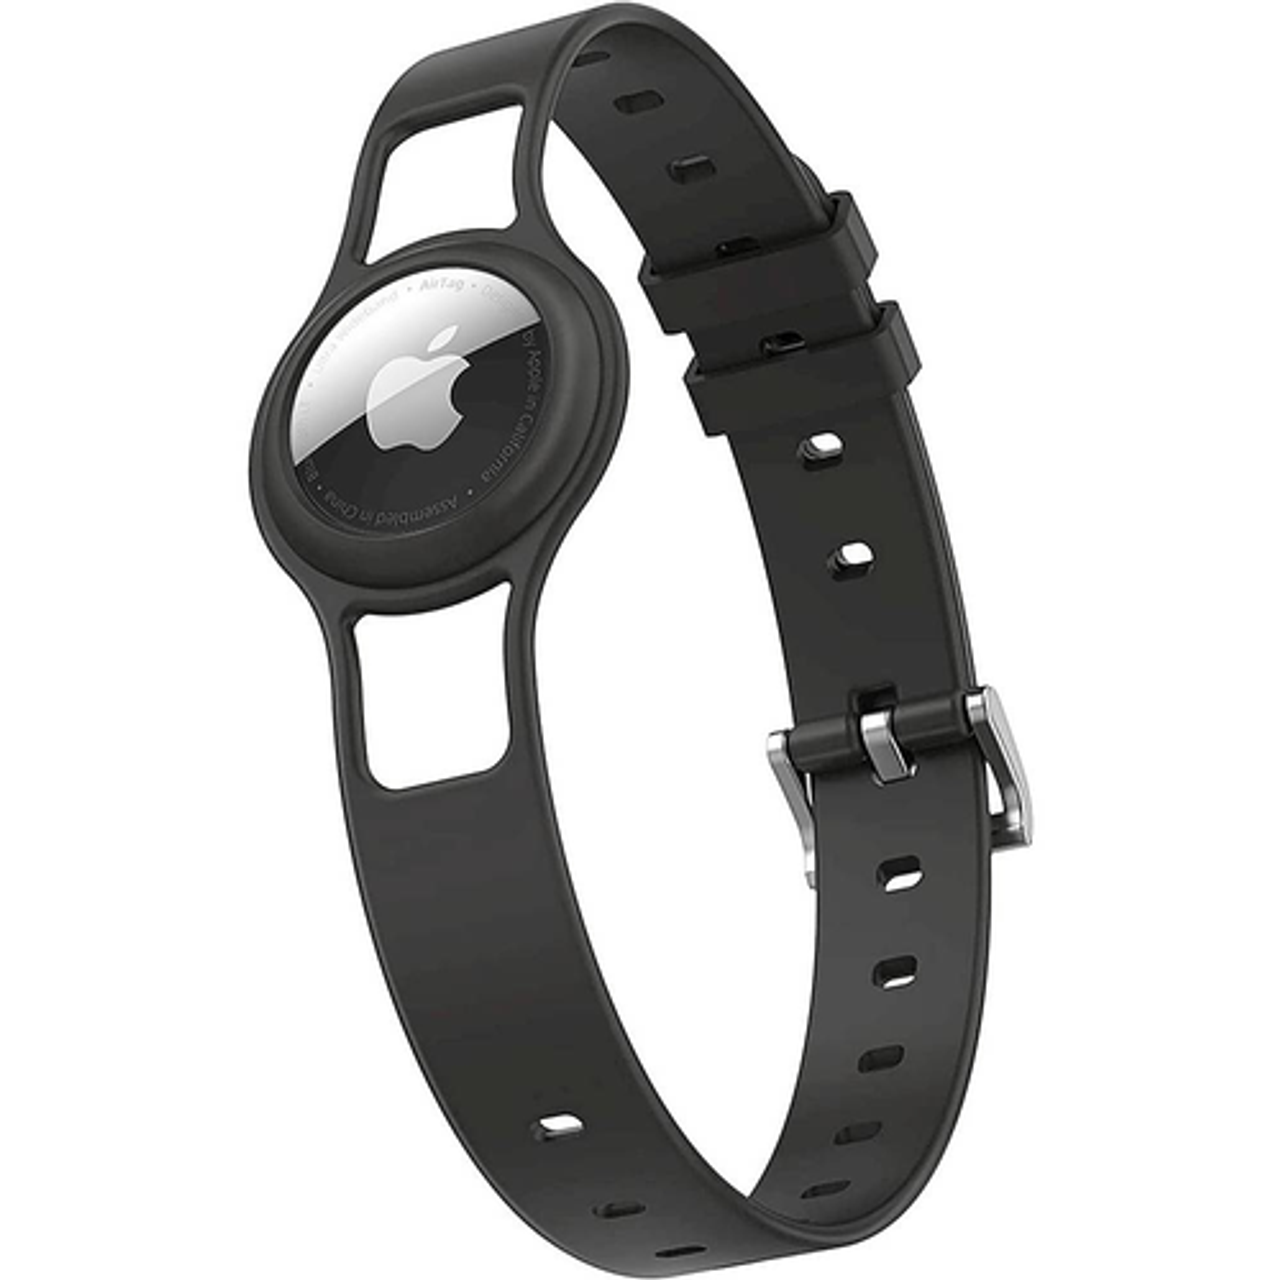 SaharaCase - Silicone Dog Collar for Apple AirTag - Black